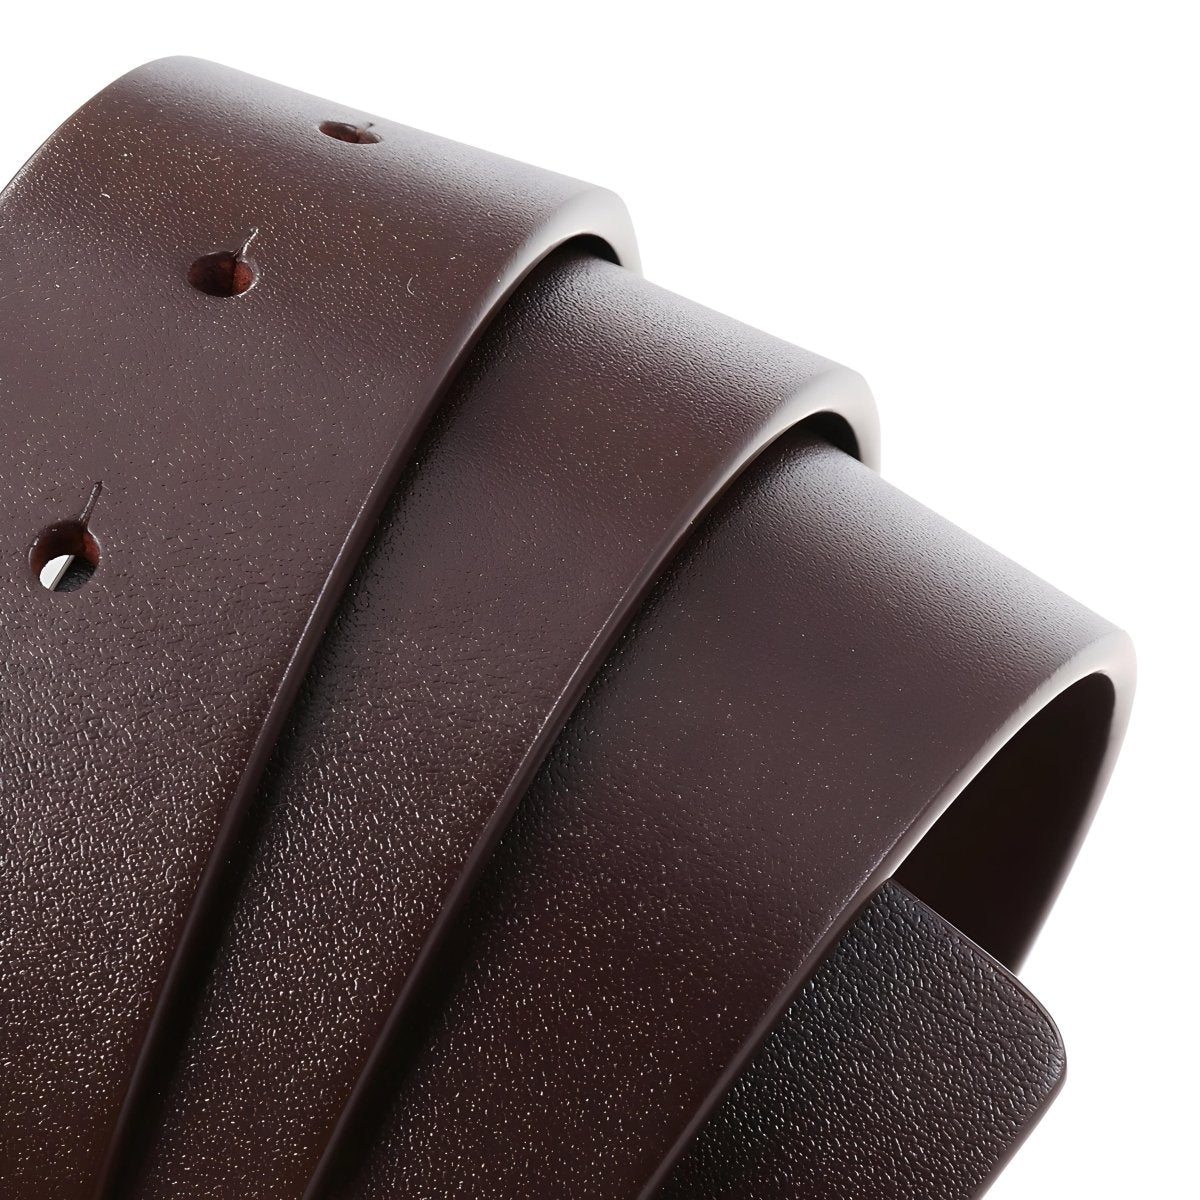 Lanière de ceinture 3.4 cm, en cuir, pour boucles ardillons, modèle Gile - La Boutique de la Ceinture